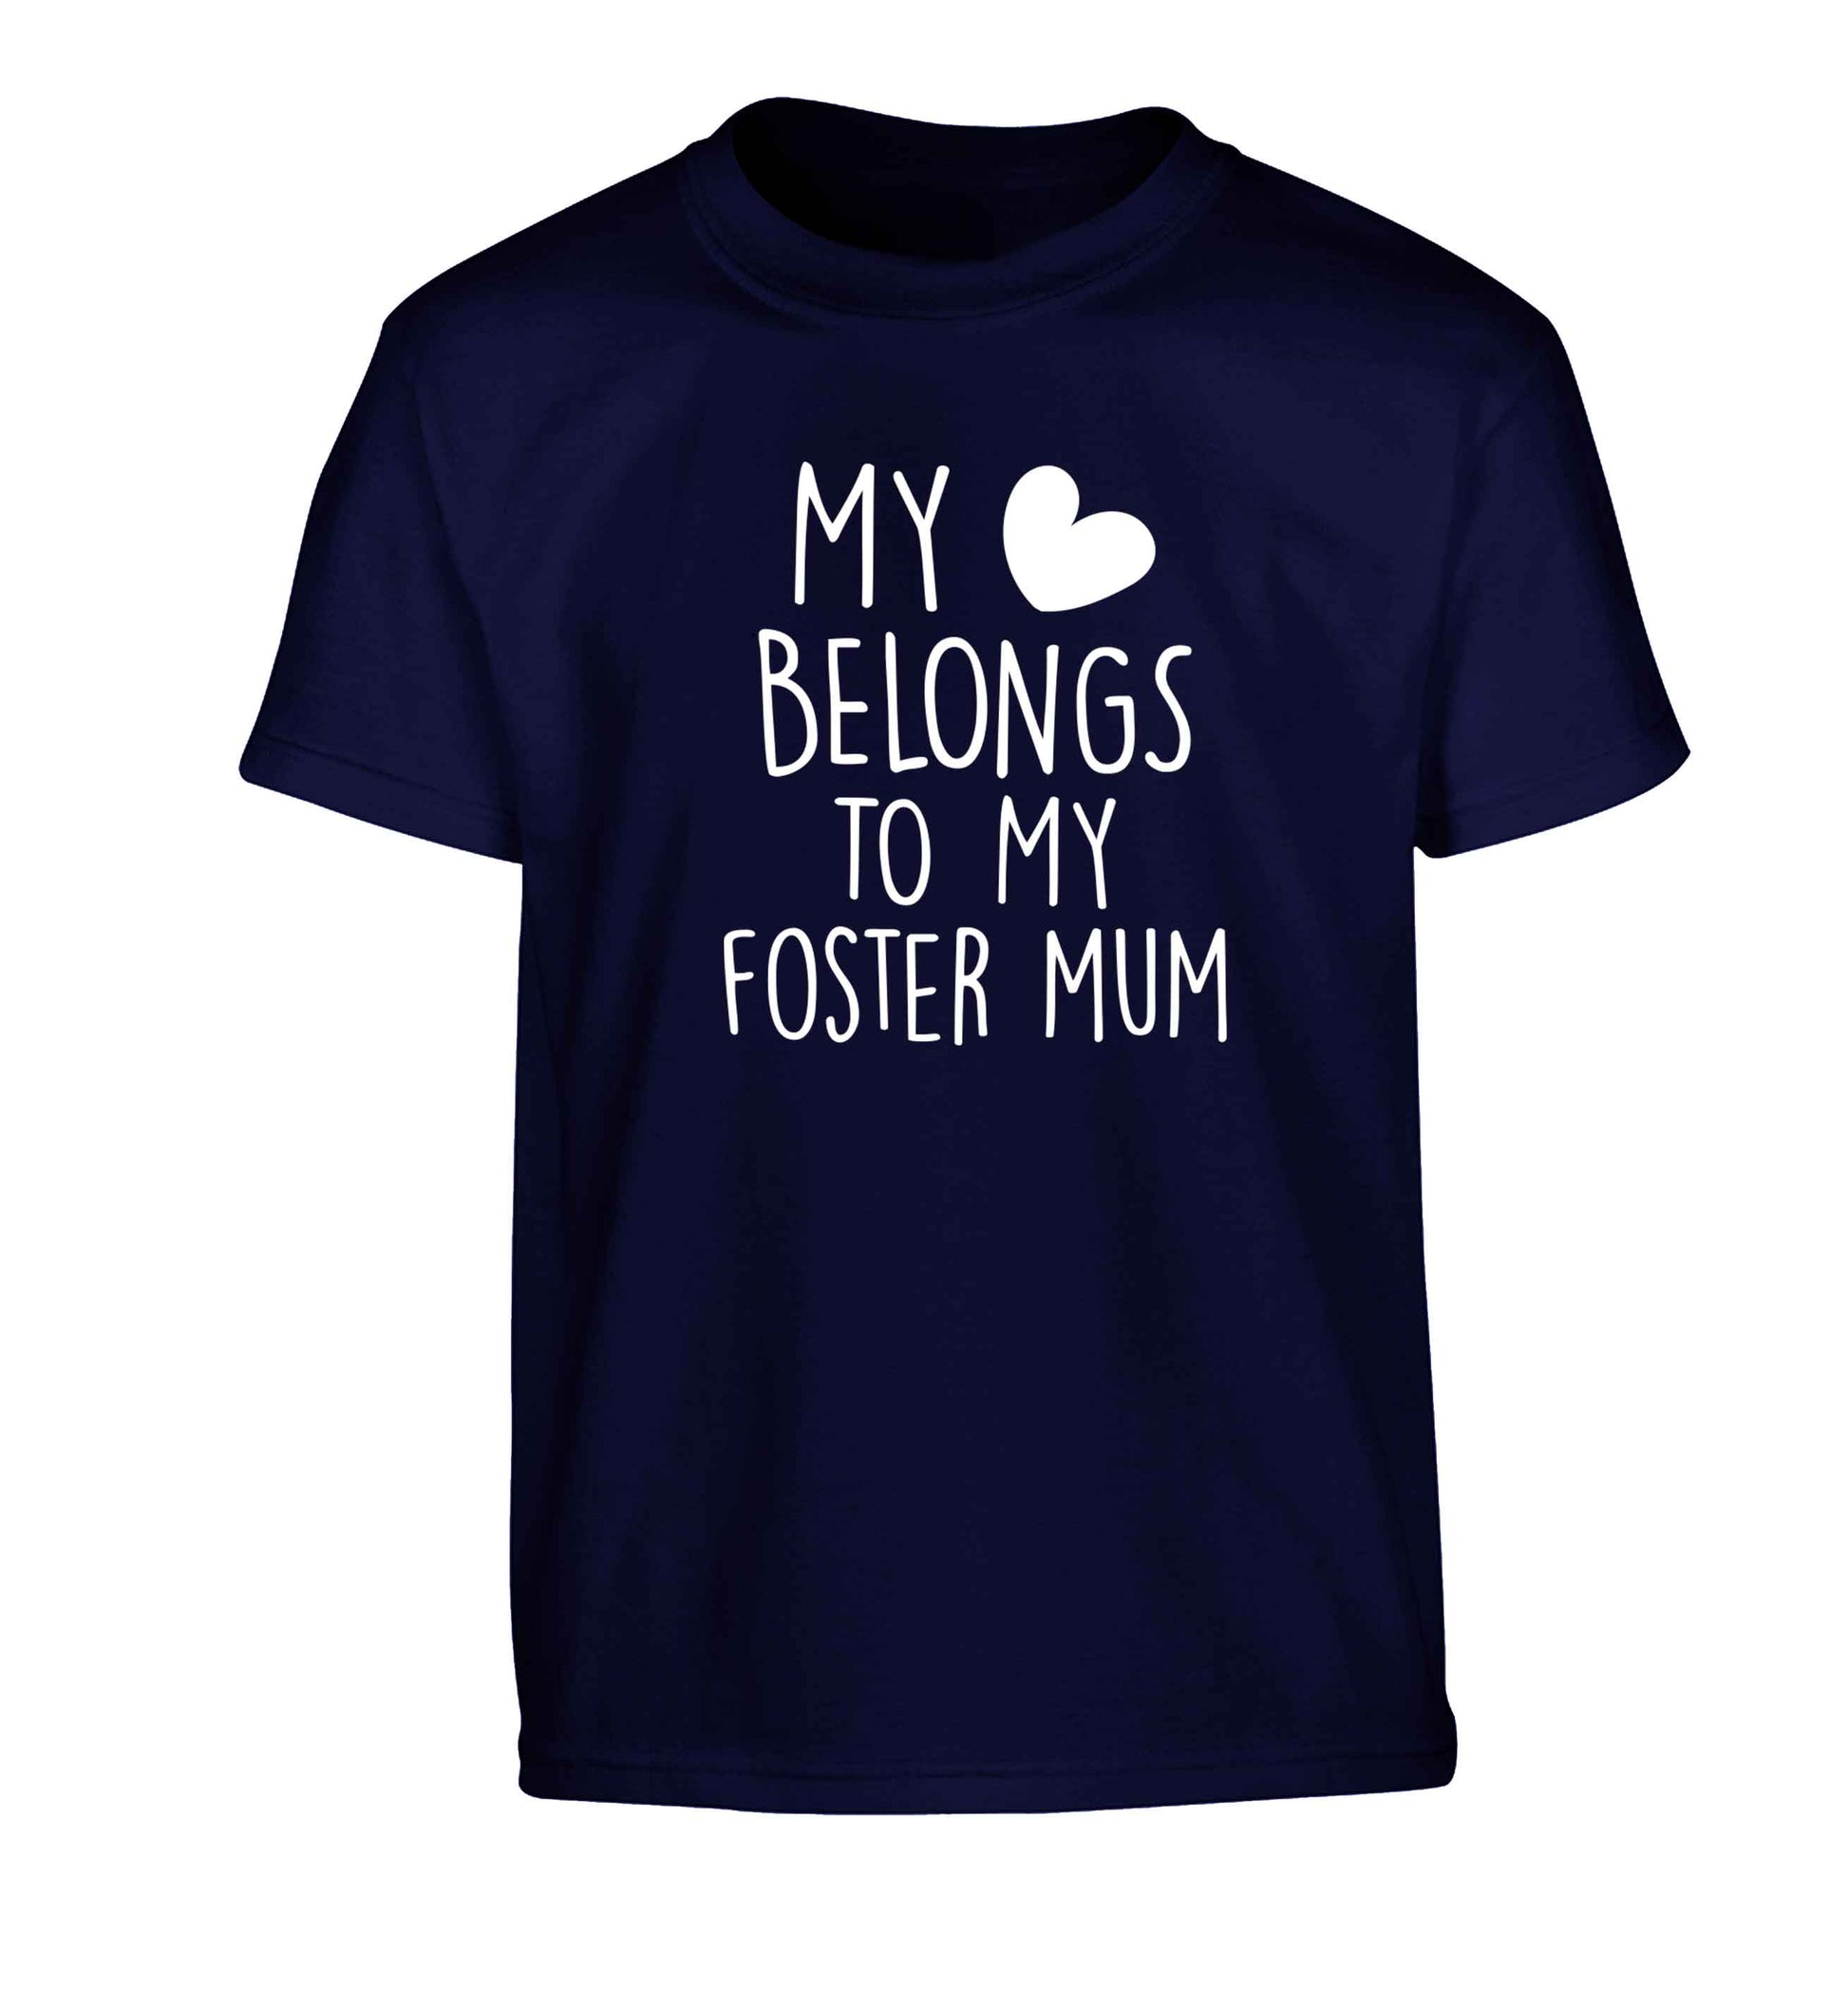 My heart belongs to my foster mum Children's navy Tshirt 12-13 Years